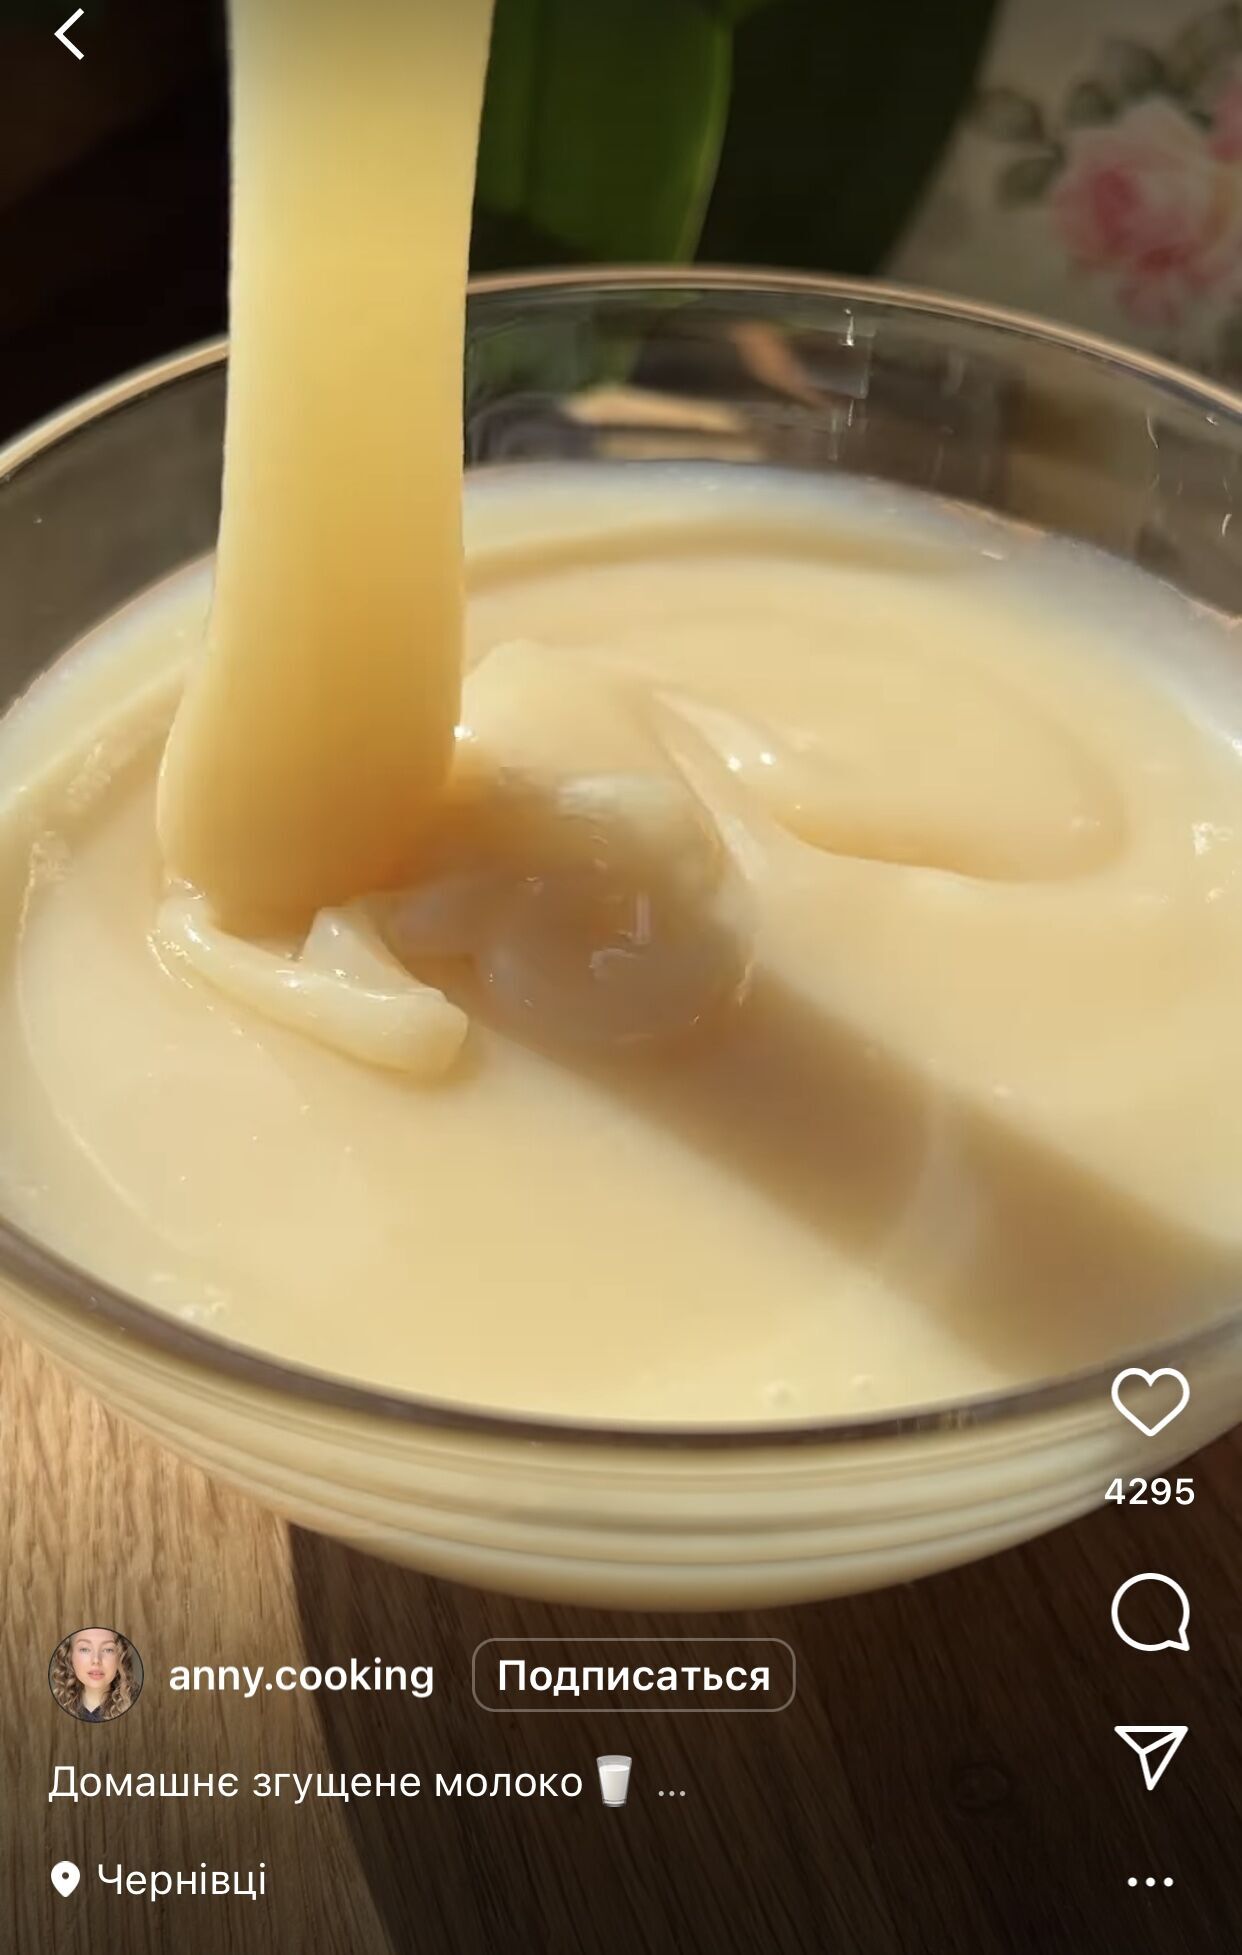 Recipe for homemade condensed milk